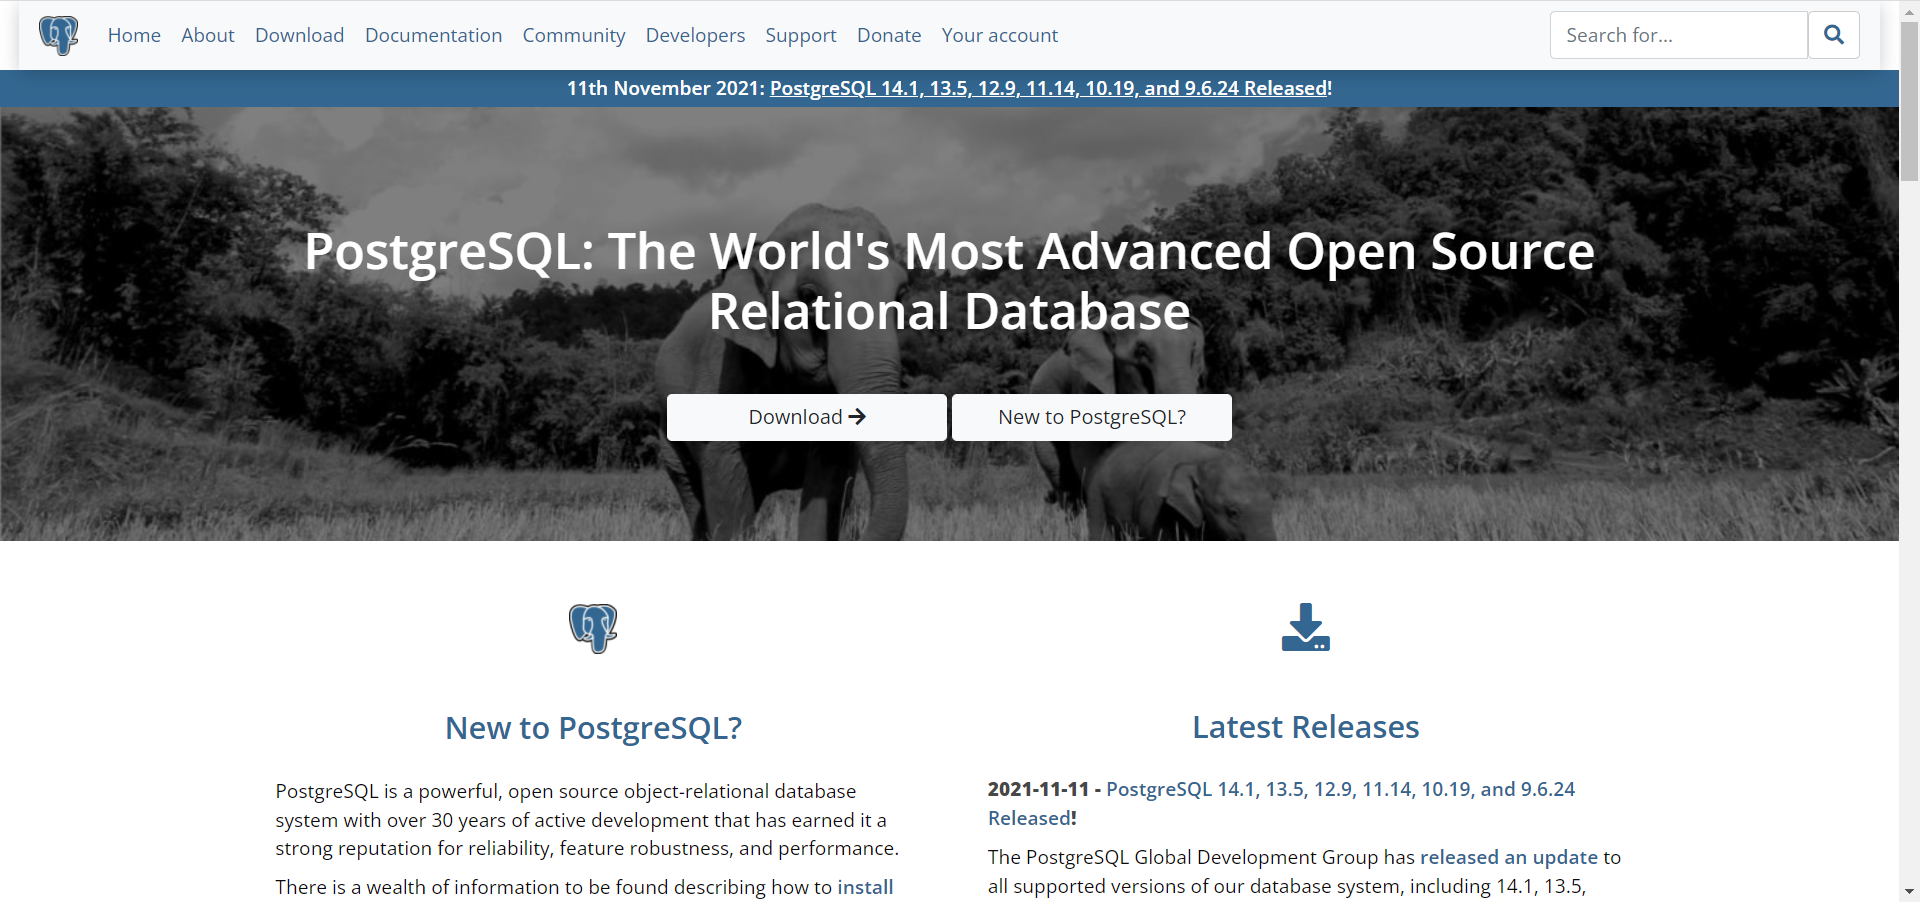 Página inicial do PostgreeSQL na qual há um banner com a imagem de uma família de elefantes na savana em escala de cinza e, sobre ela, a frase "PostgreSQL: The World's Most Advanced Open Source Relational Database". Tradução "PostgreSQL: A Base de Dados Relacional Open Source Mais Avançada do Mundo"